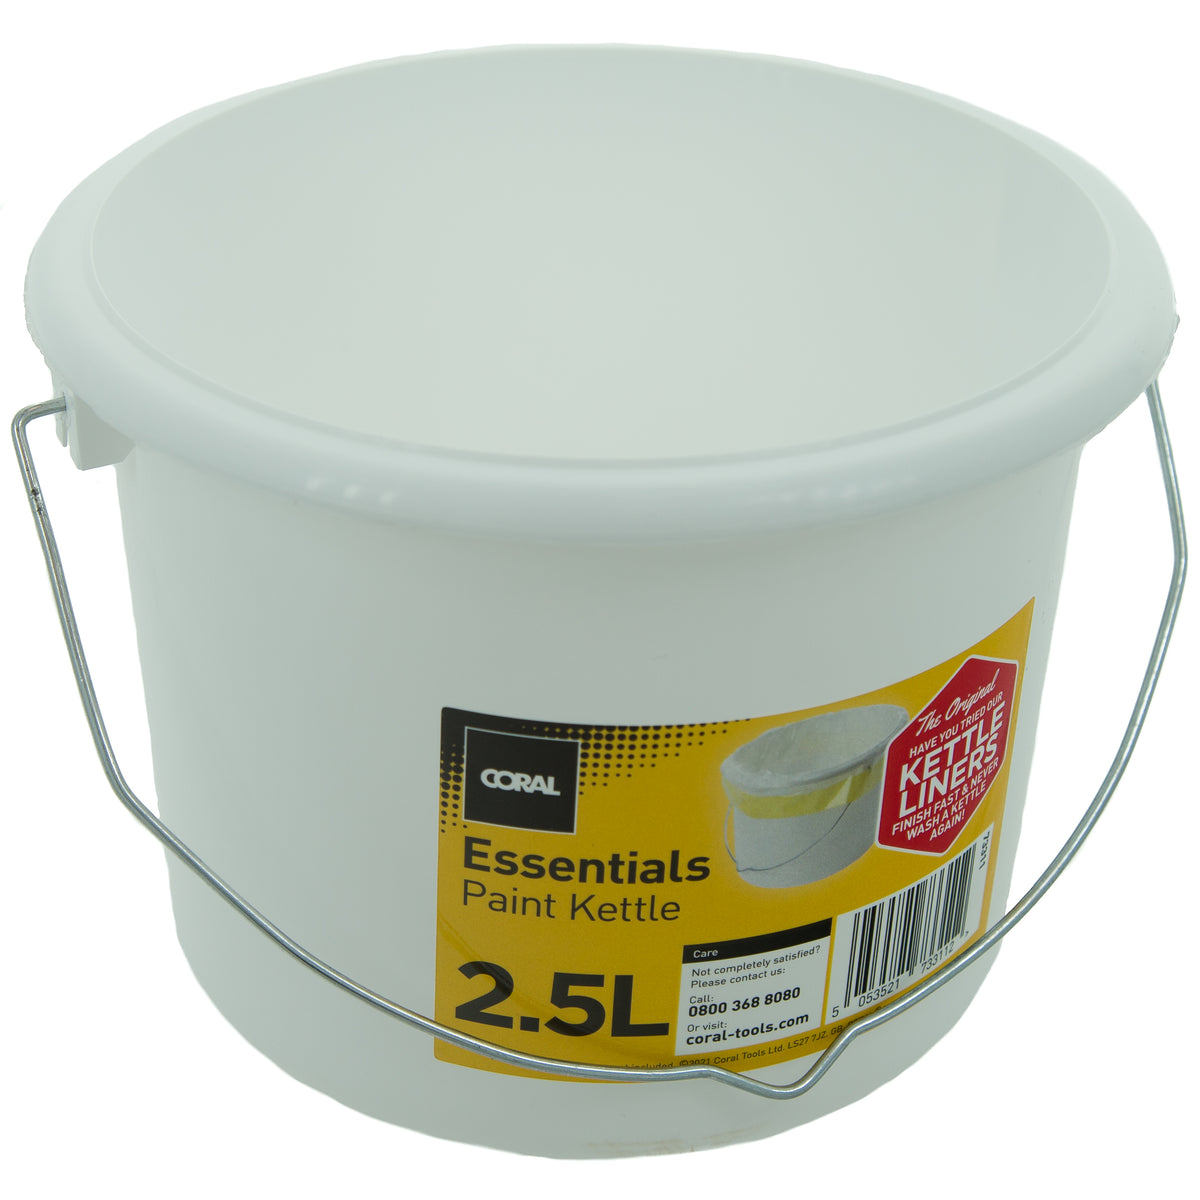 STANLEY - Plastic Paint Kettle 2.5 litre